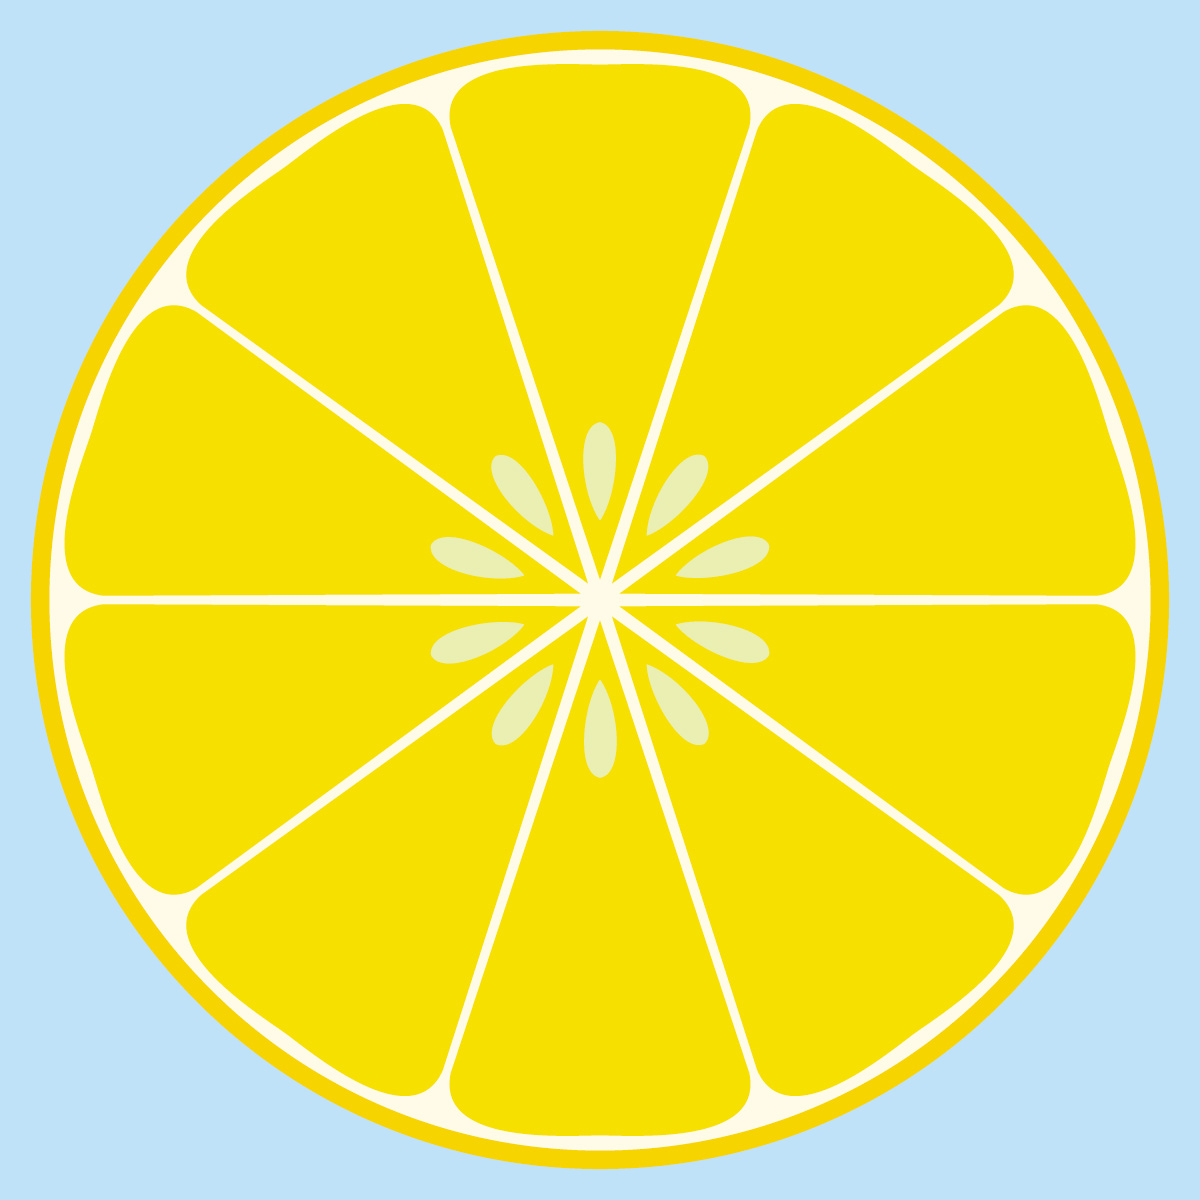 lemon juice clipart - photo #48